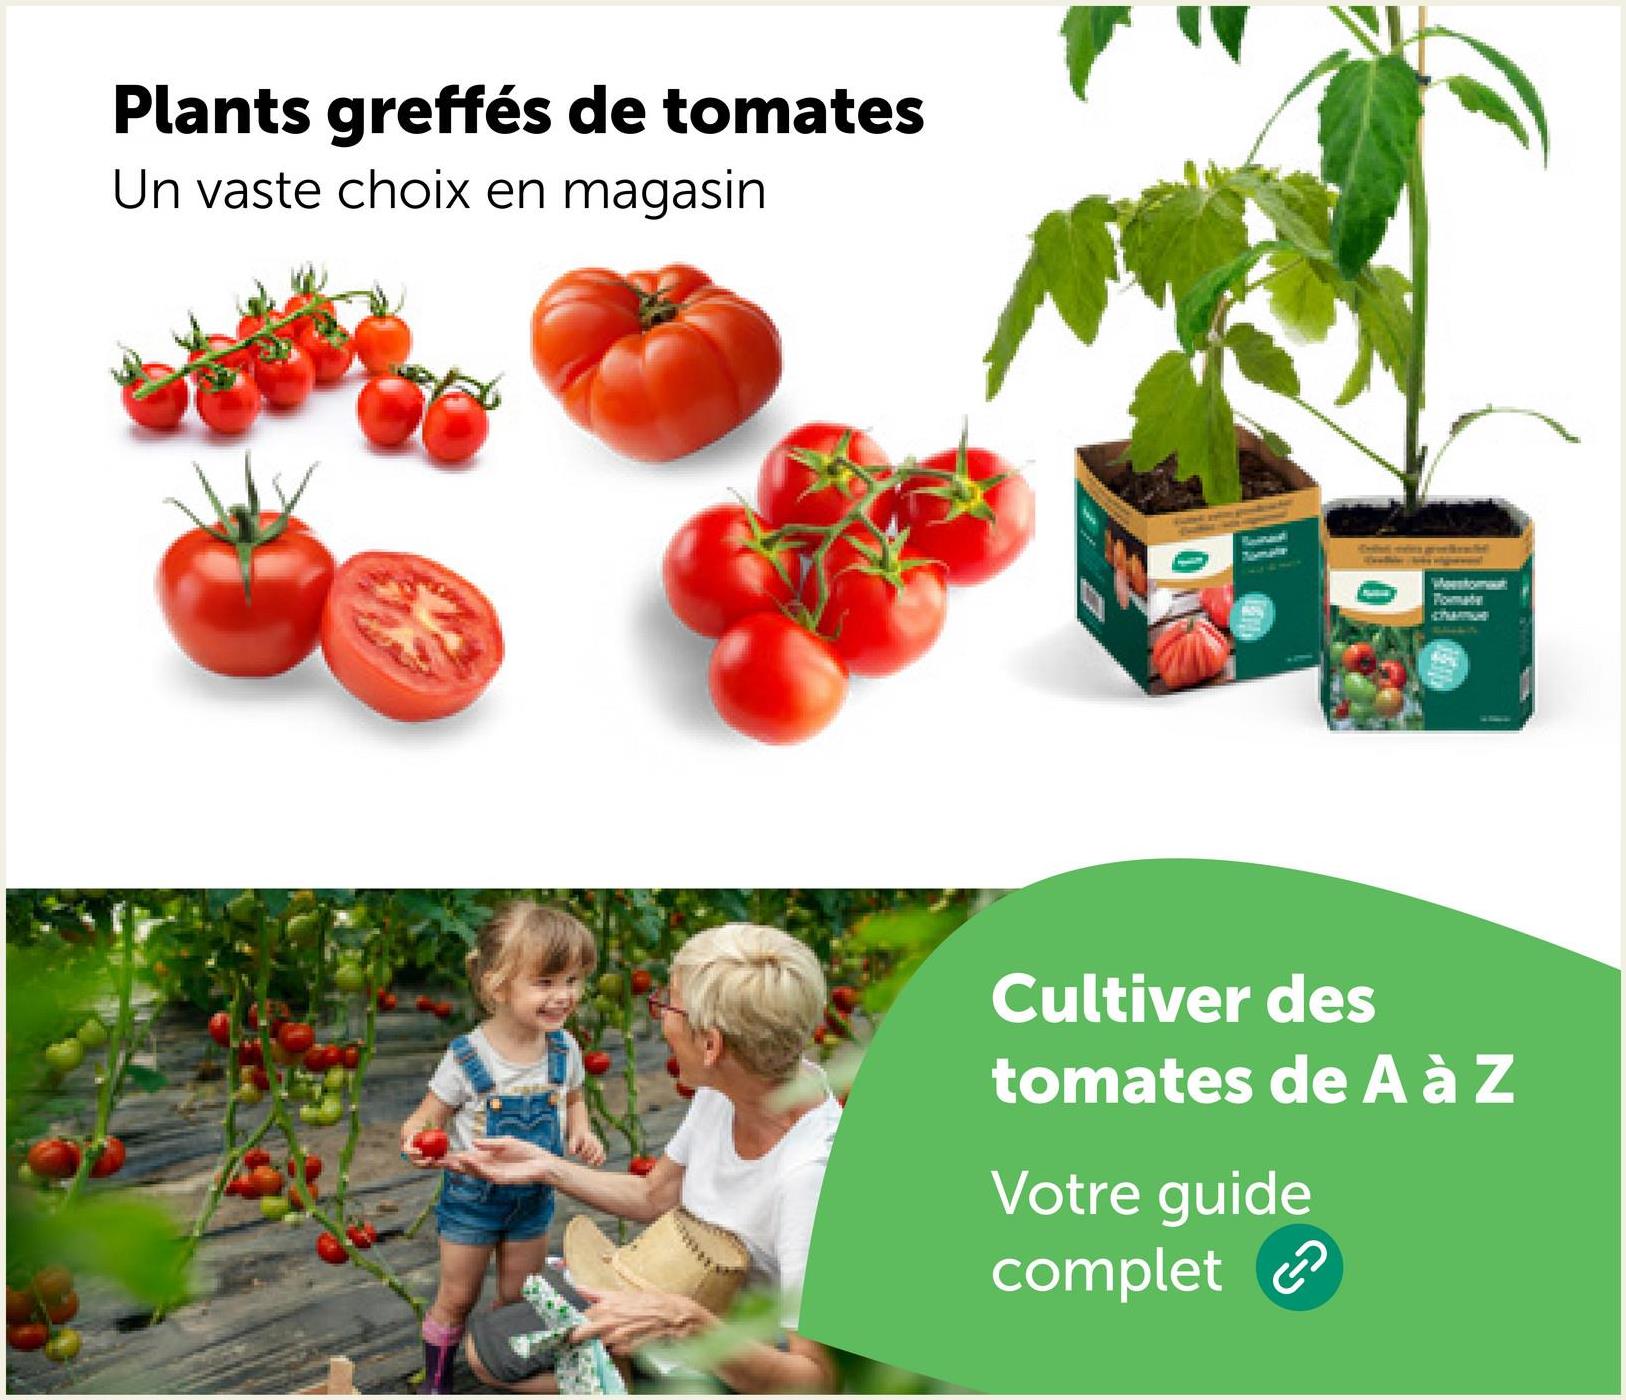 Plants greffés de tomates
Un vaste choix en magasin
0
Mestomat
Cultiver des
tomates de A à Z
Votre guide
complet